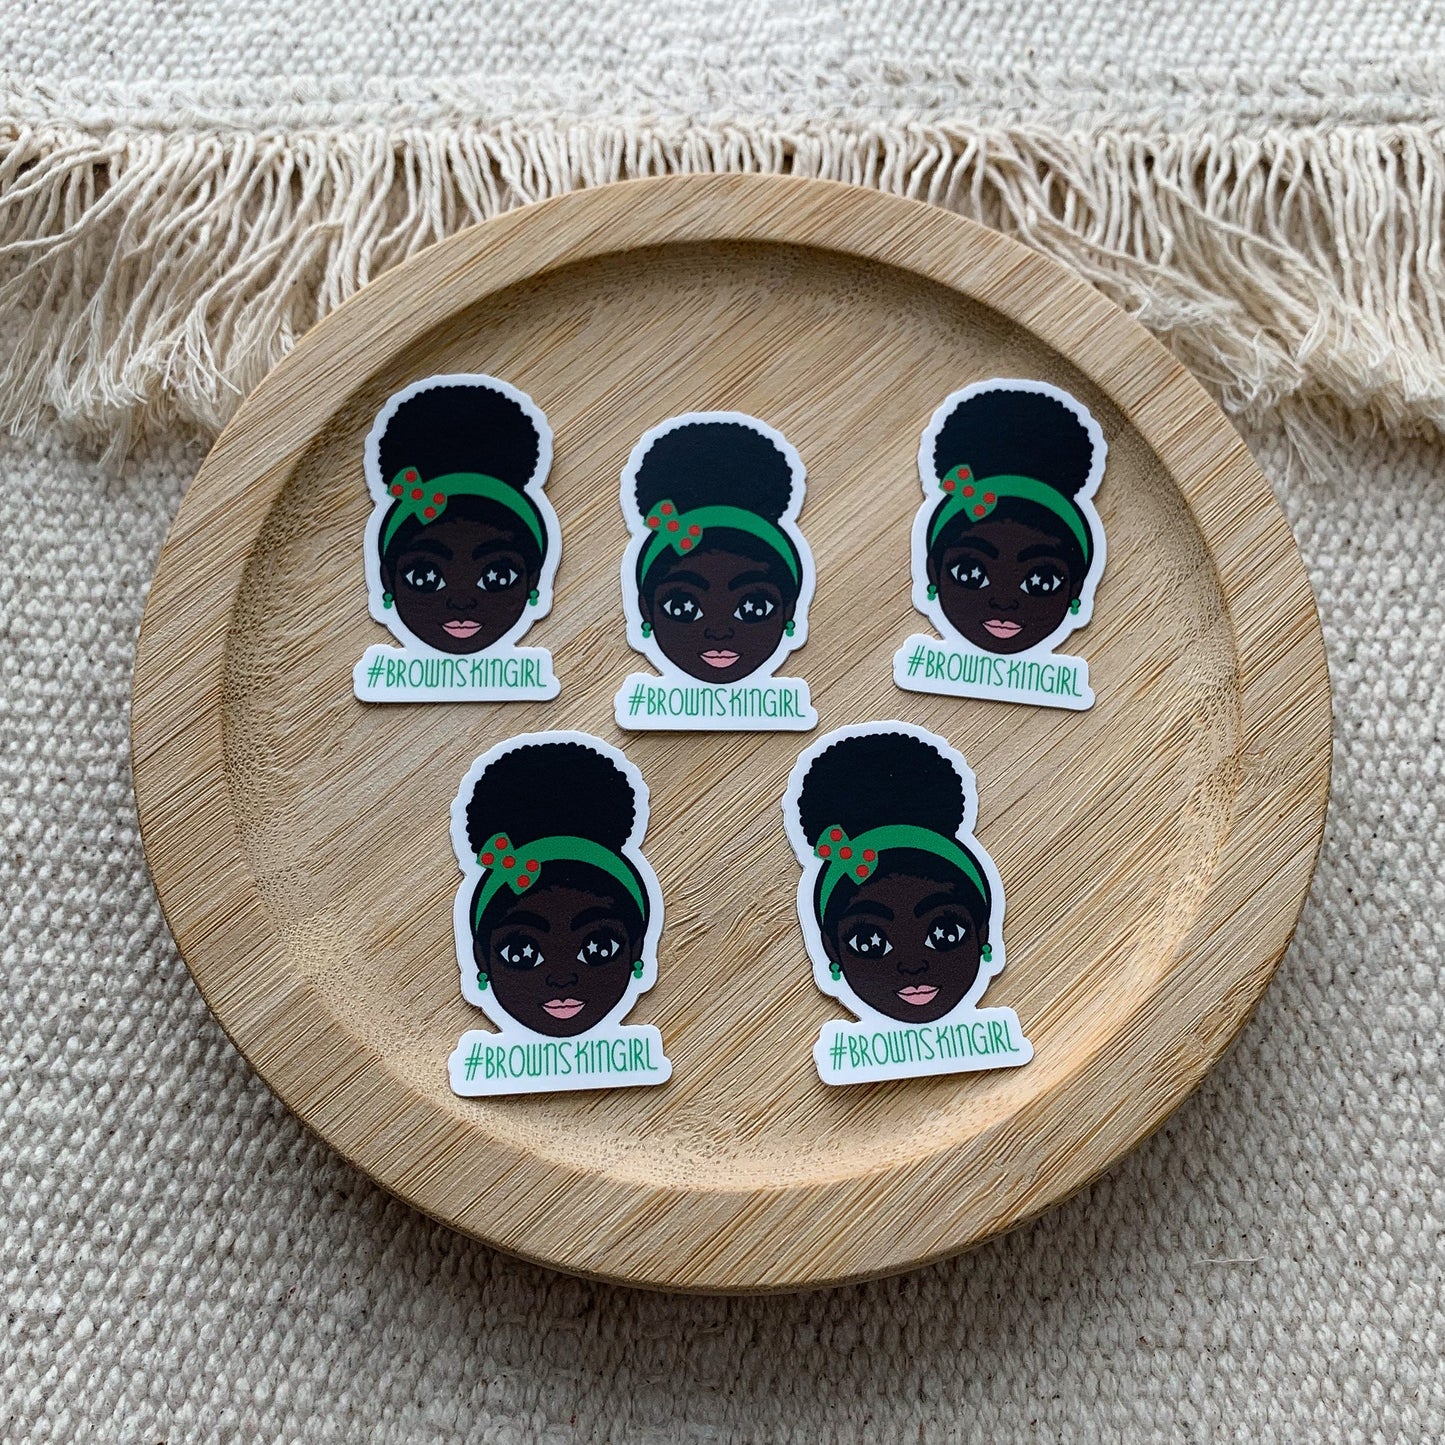 Sticker| Schwarzes Mädchen mit Afrohairpuff Brownskingirl 25 x 44 mm